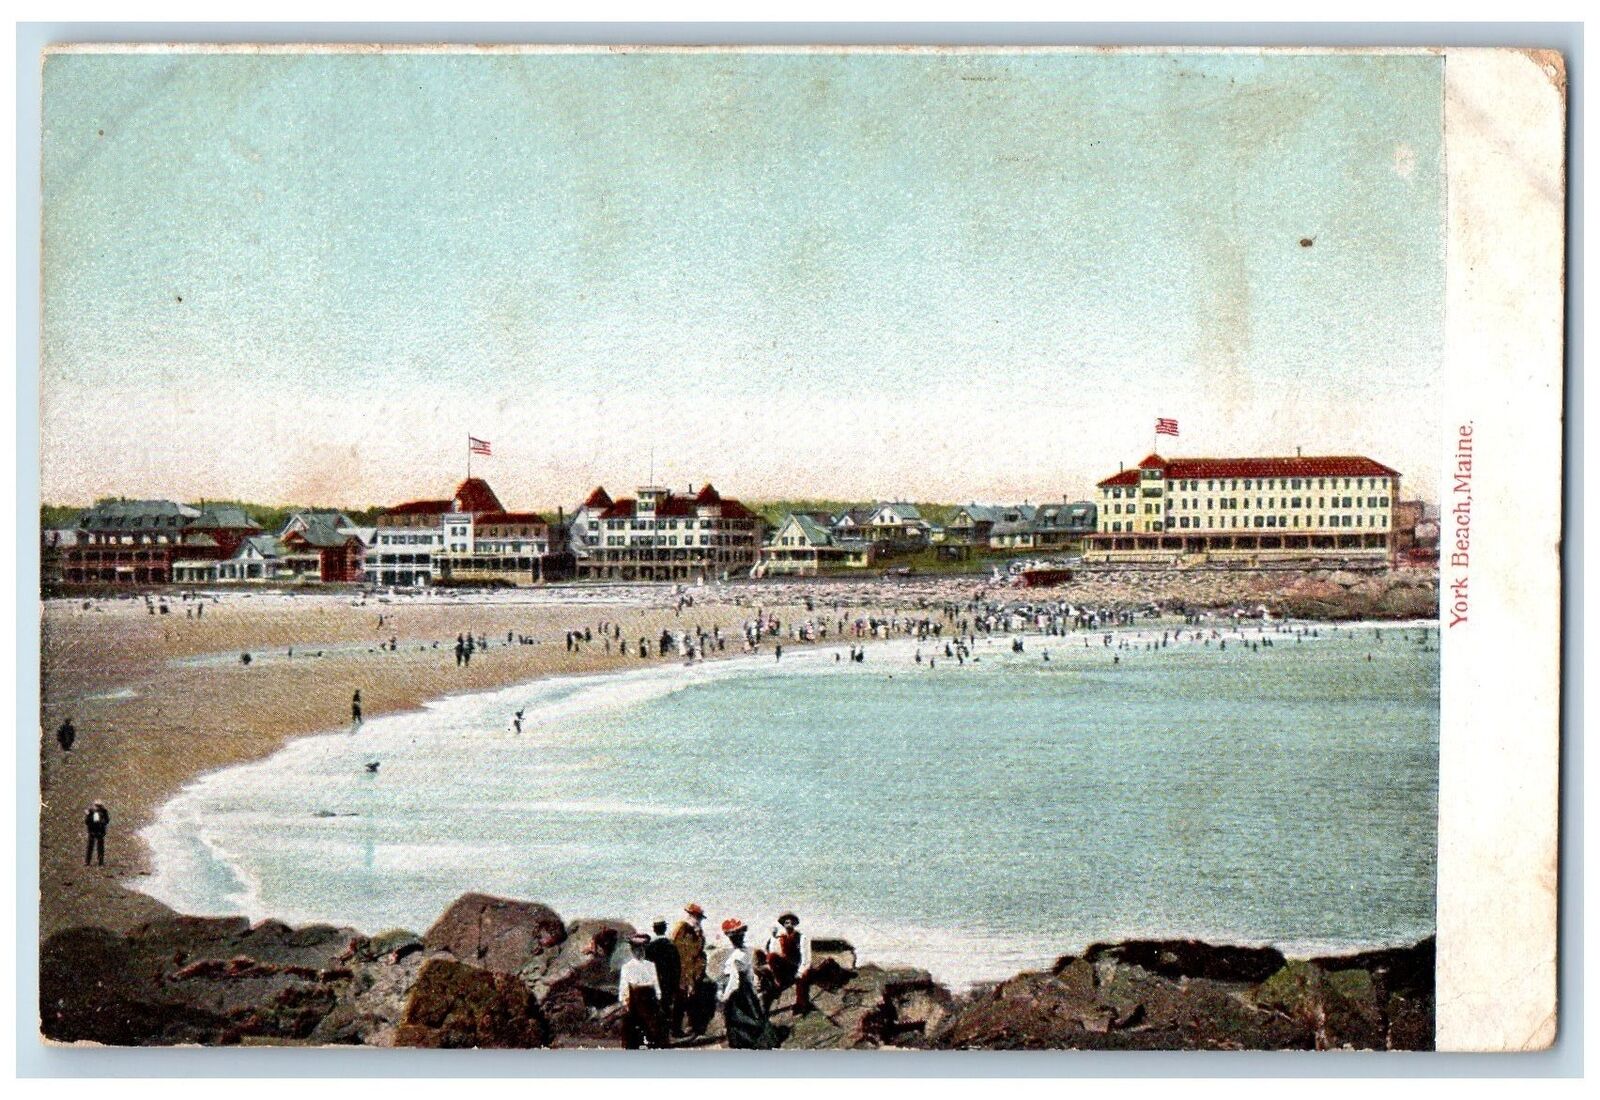 1908 Crowd Bathing Seashore Buildings Hotels York Beach Maine Vintage Postcard